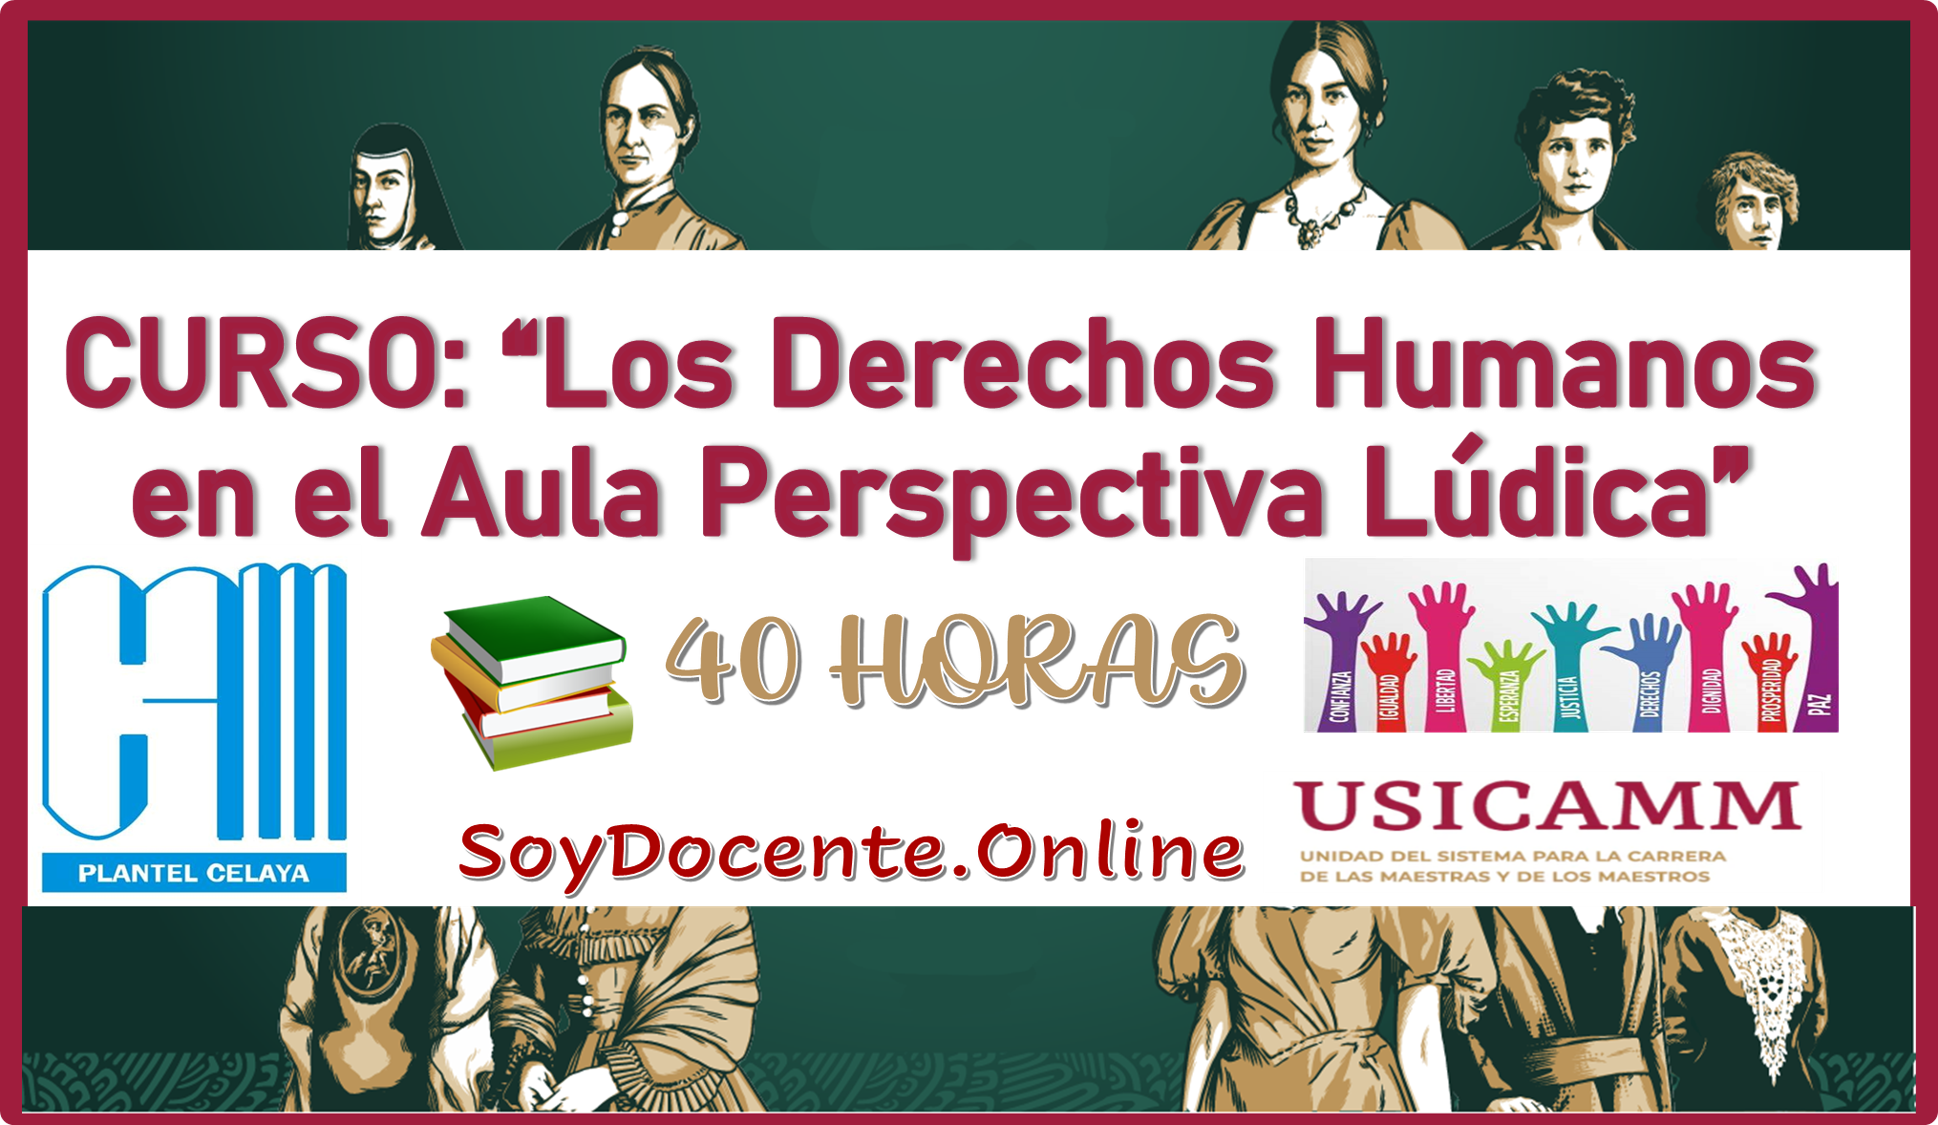 Curso presencial “Los Derechos Humanos en el Aula una Perspectiva Lúdica” con 40 horas, emitido por la CAM Celaya, aceptado oficialmente por la USICAMM.